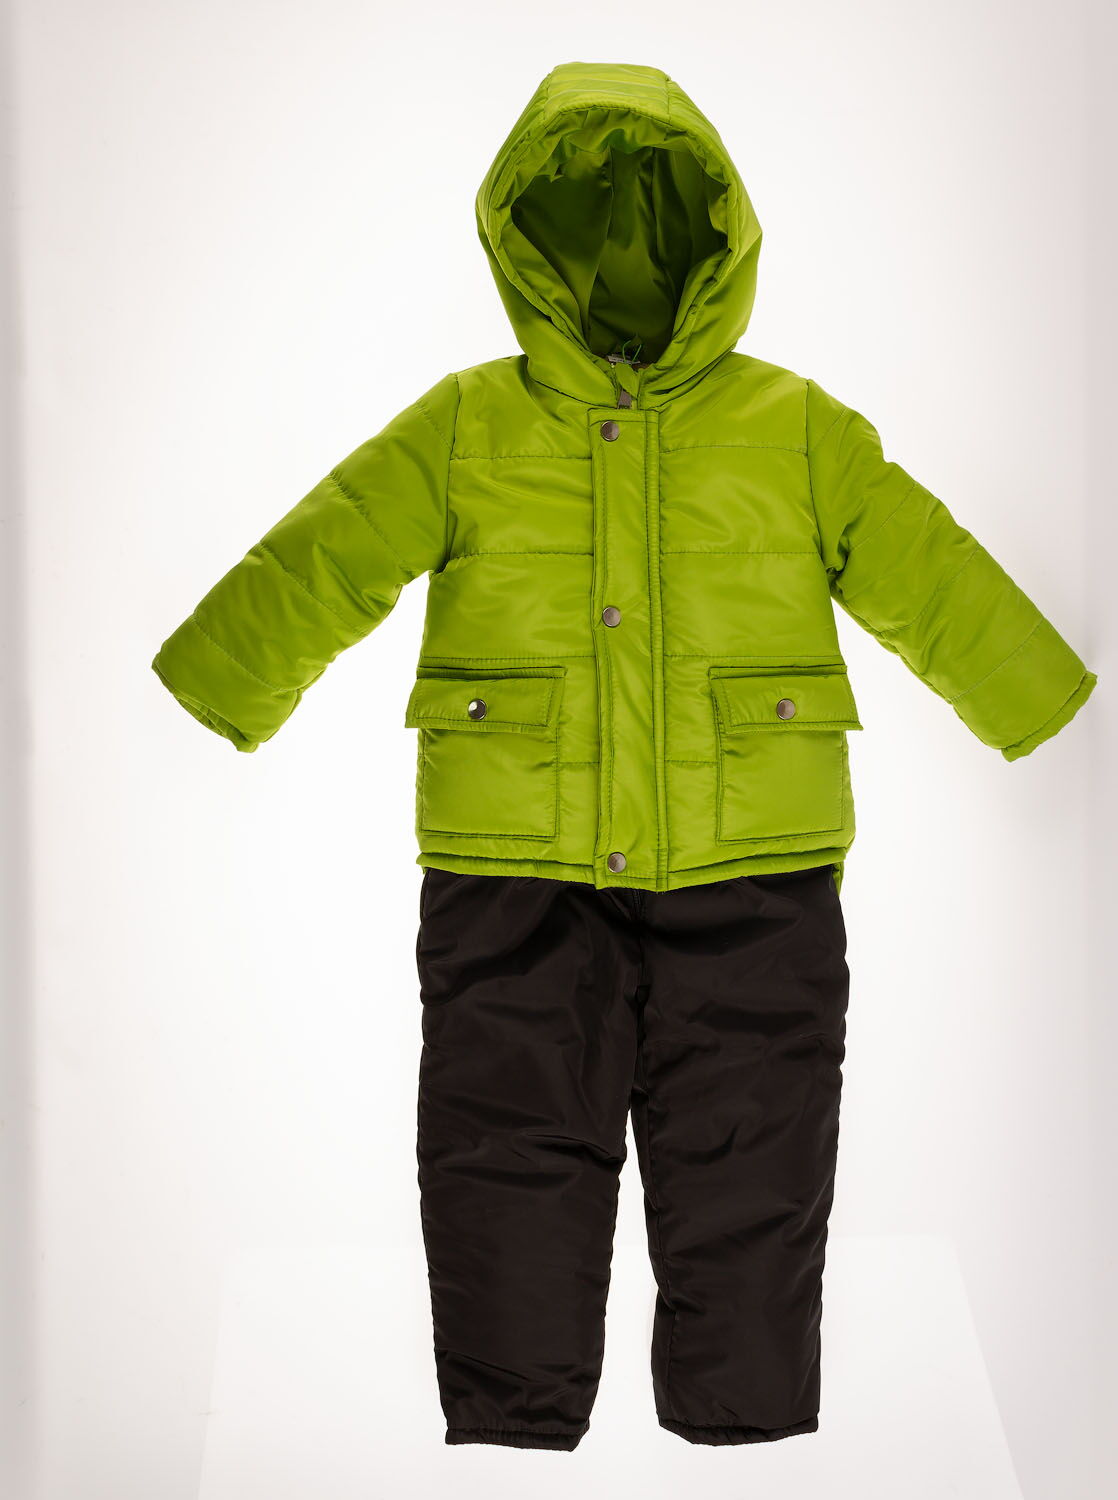 Комбинезон раздельный зимний (куртка+штаны) Одягайко зеленый 20244/32041 - цена